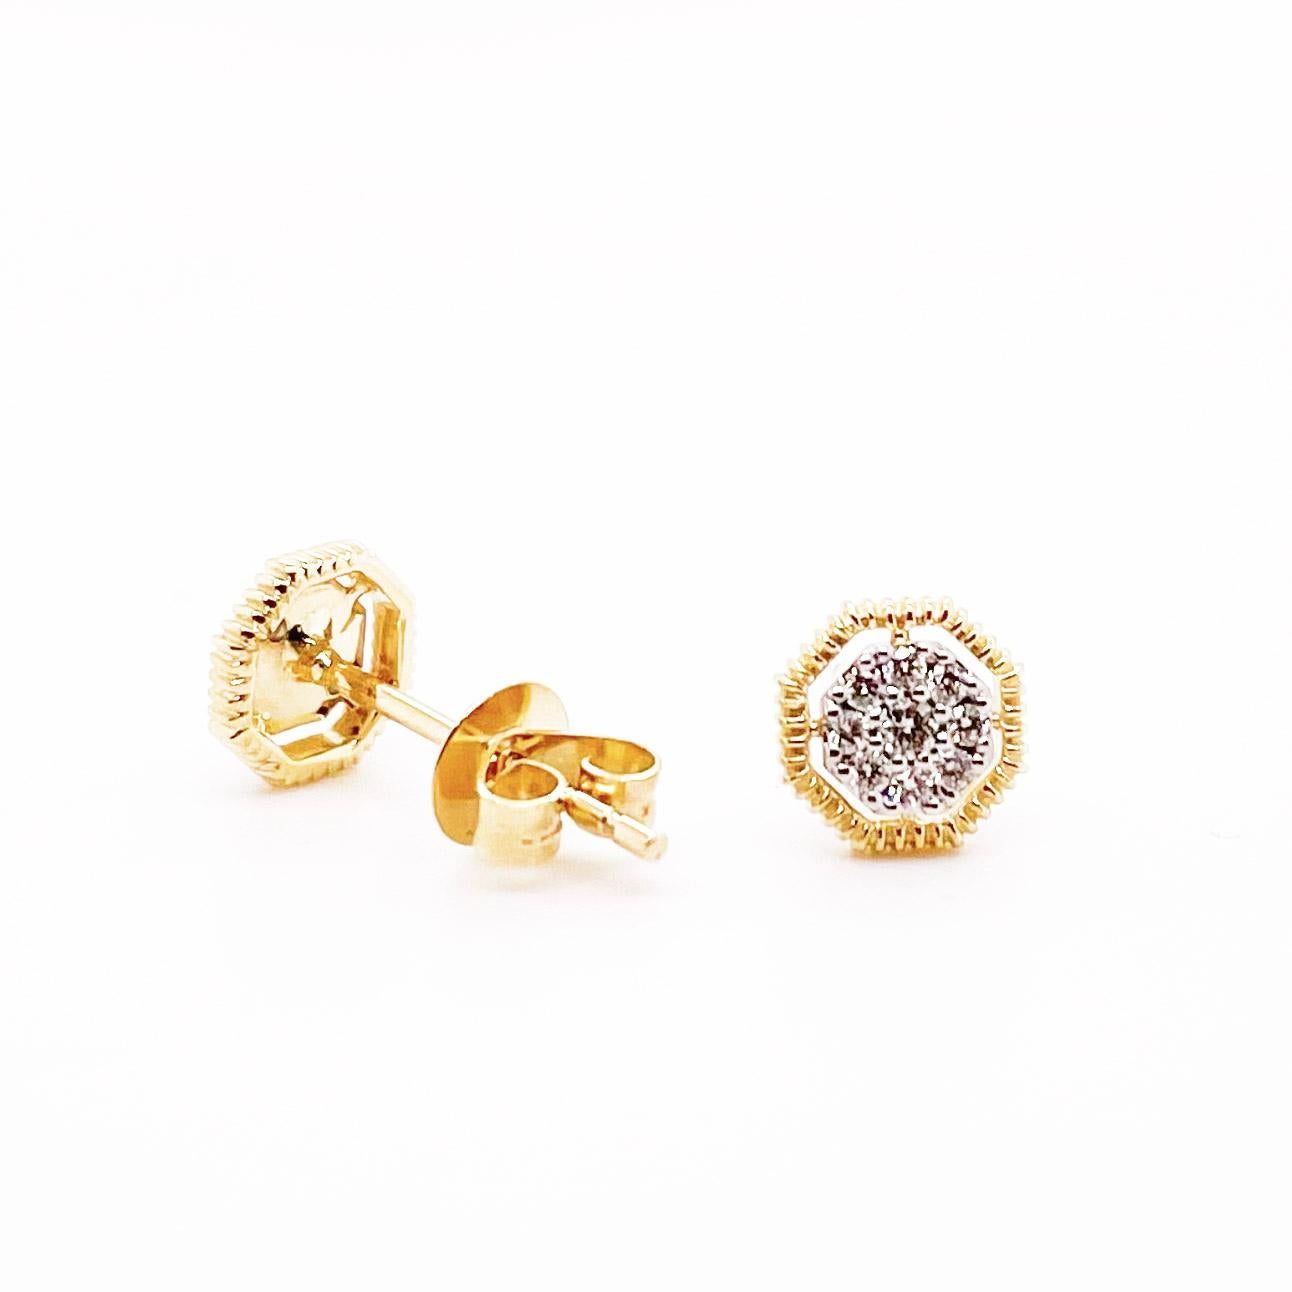 Die acht Diamant-Cluster-Ohrringe bestehen aus insgesamt sechzehn Diamanten, die alle in 14 Karat massivem Gold gefasst sind. Das Zentrum besteht aus 14 Karat Weißgold und der Rand aus 14 Karat Gelbgold mit 14 Karat Gelbgold. Die Details zu diesen